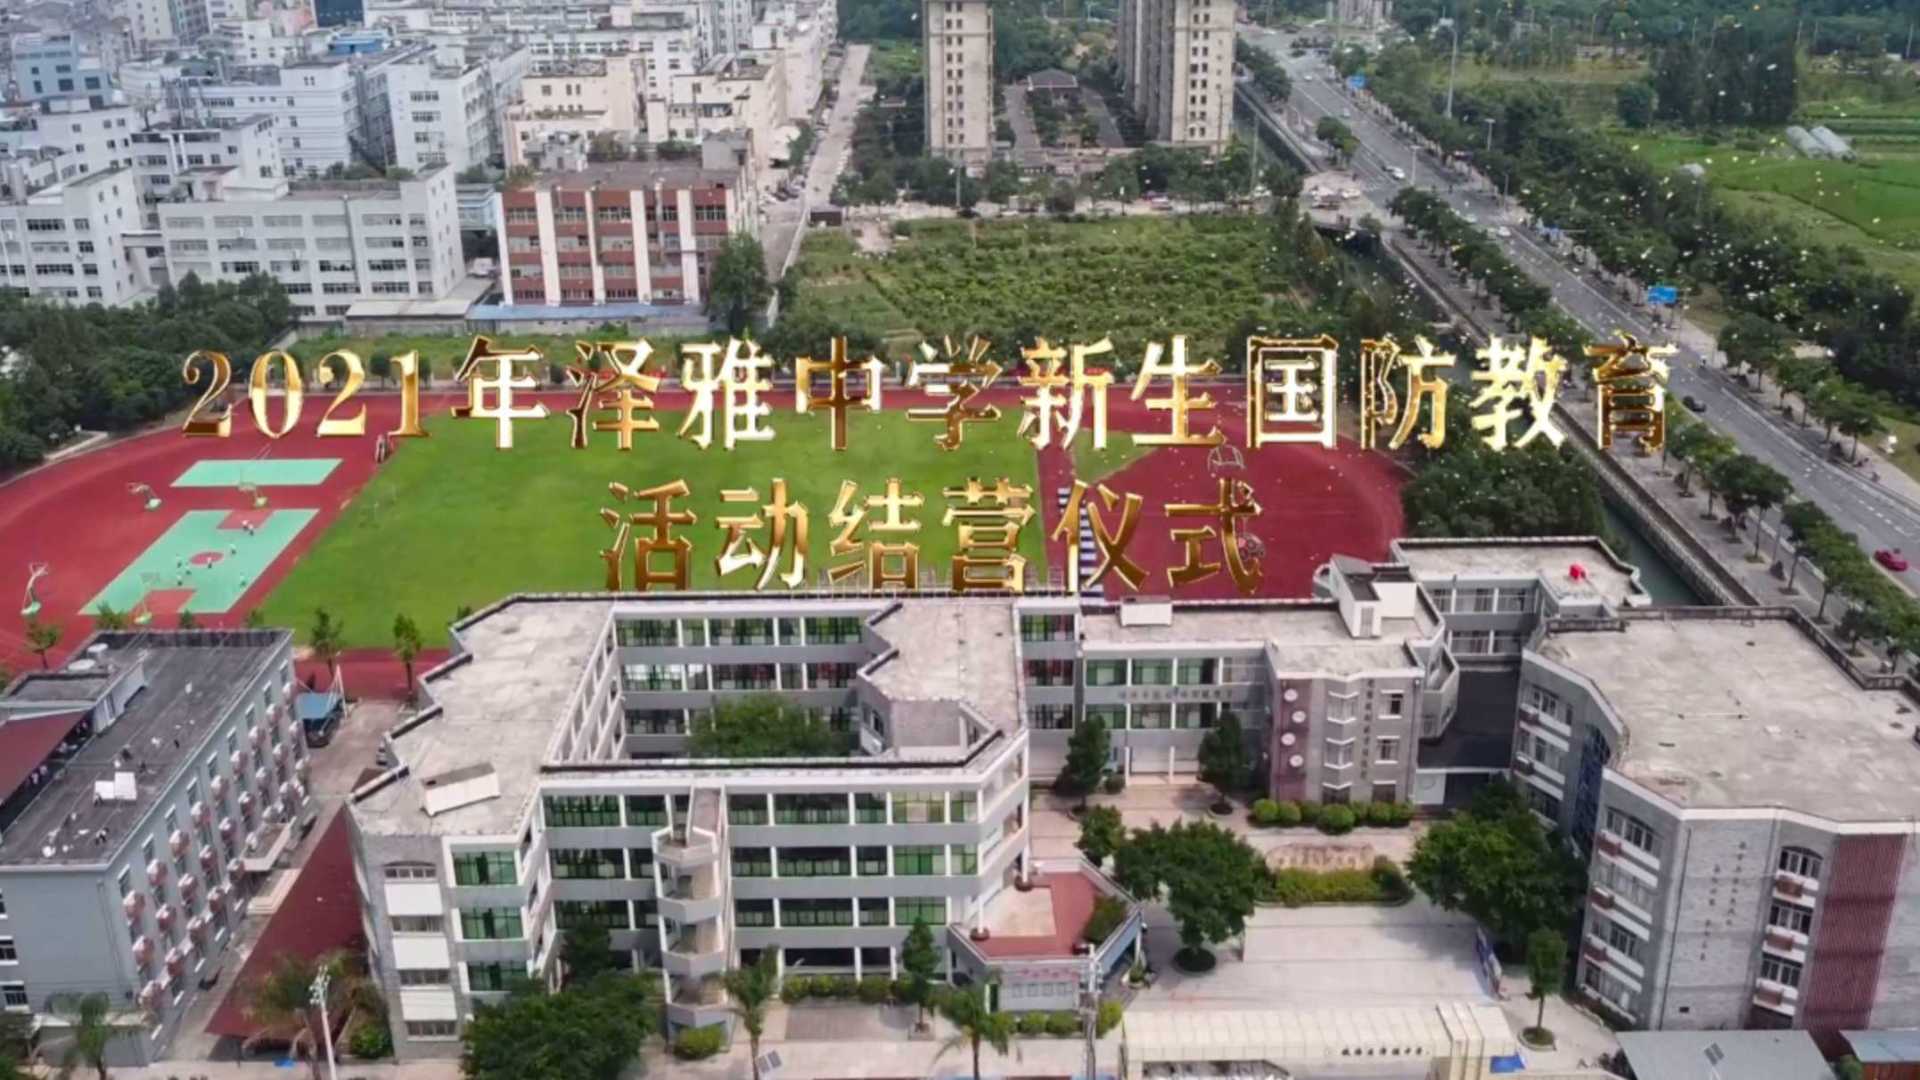 2021年泽雅中学新生国防教育活动